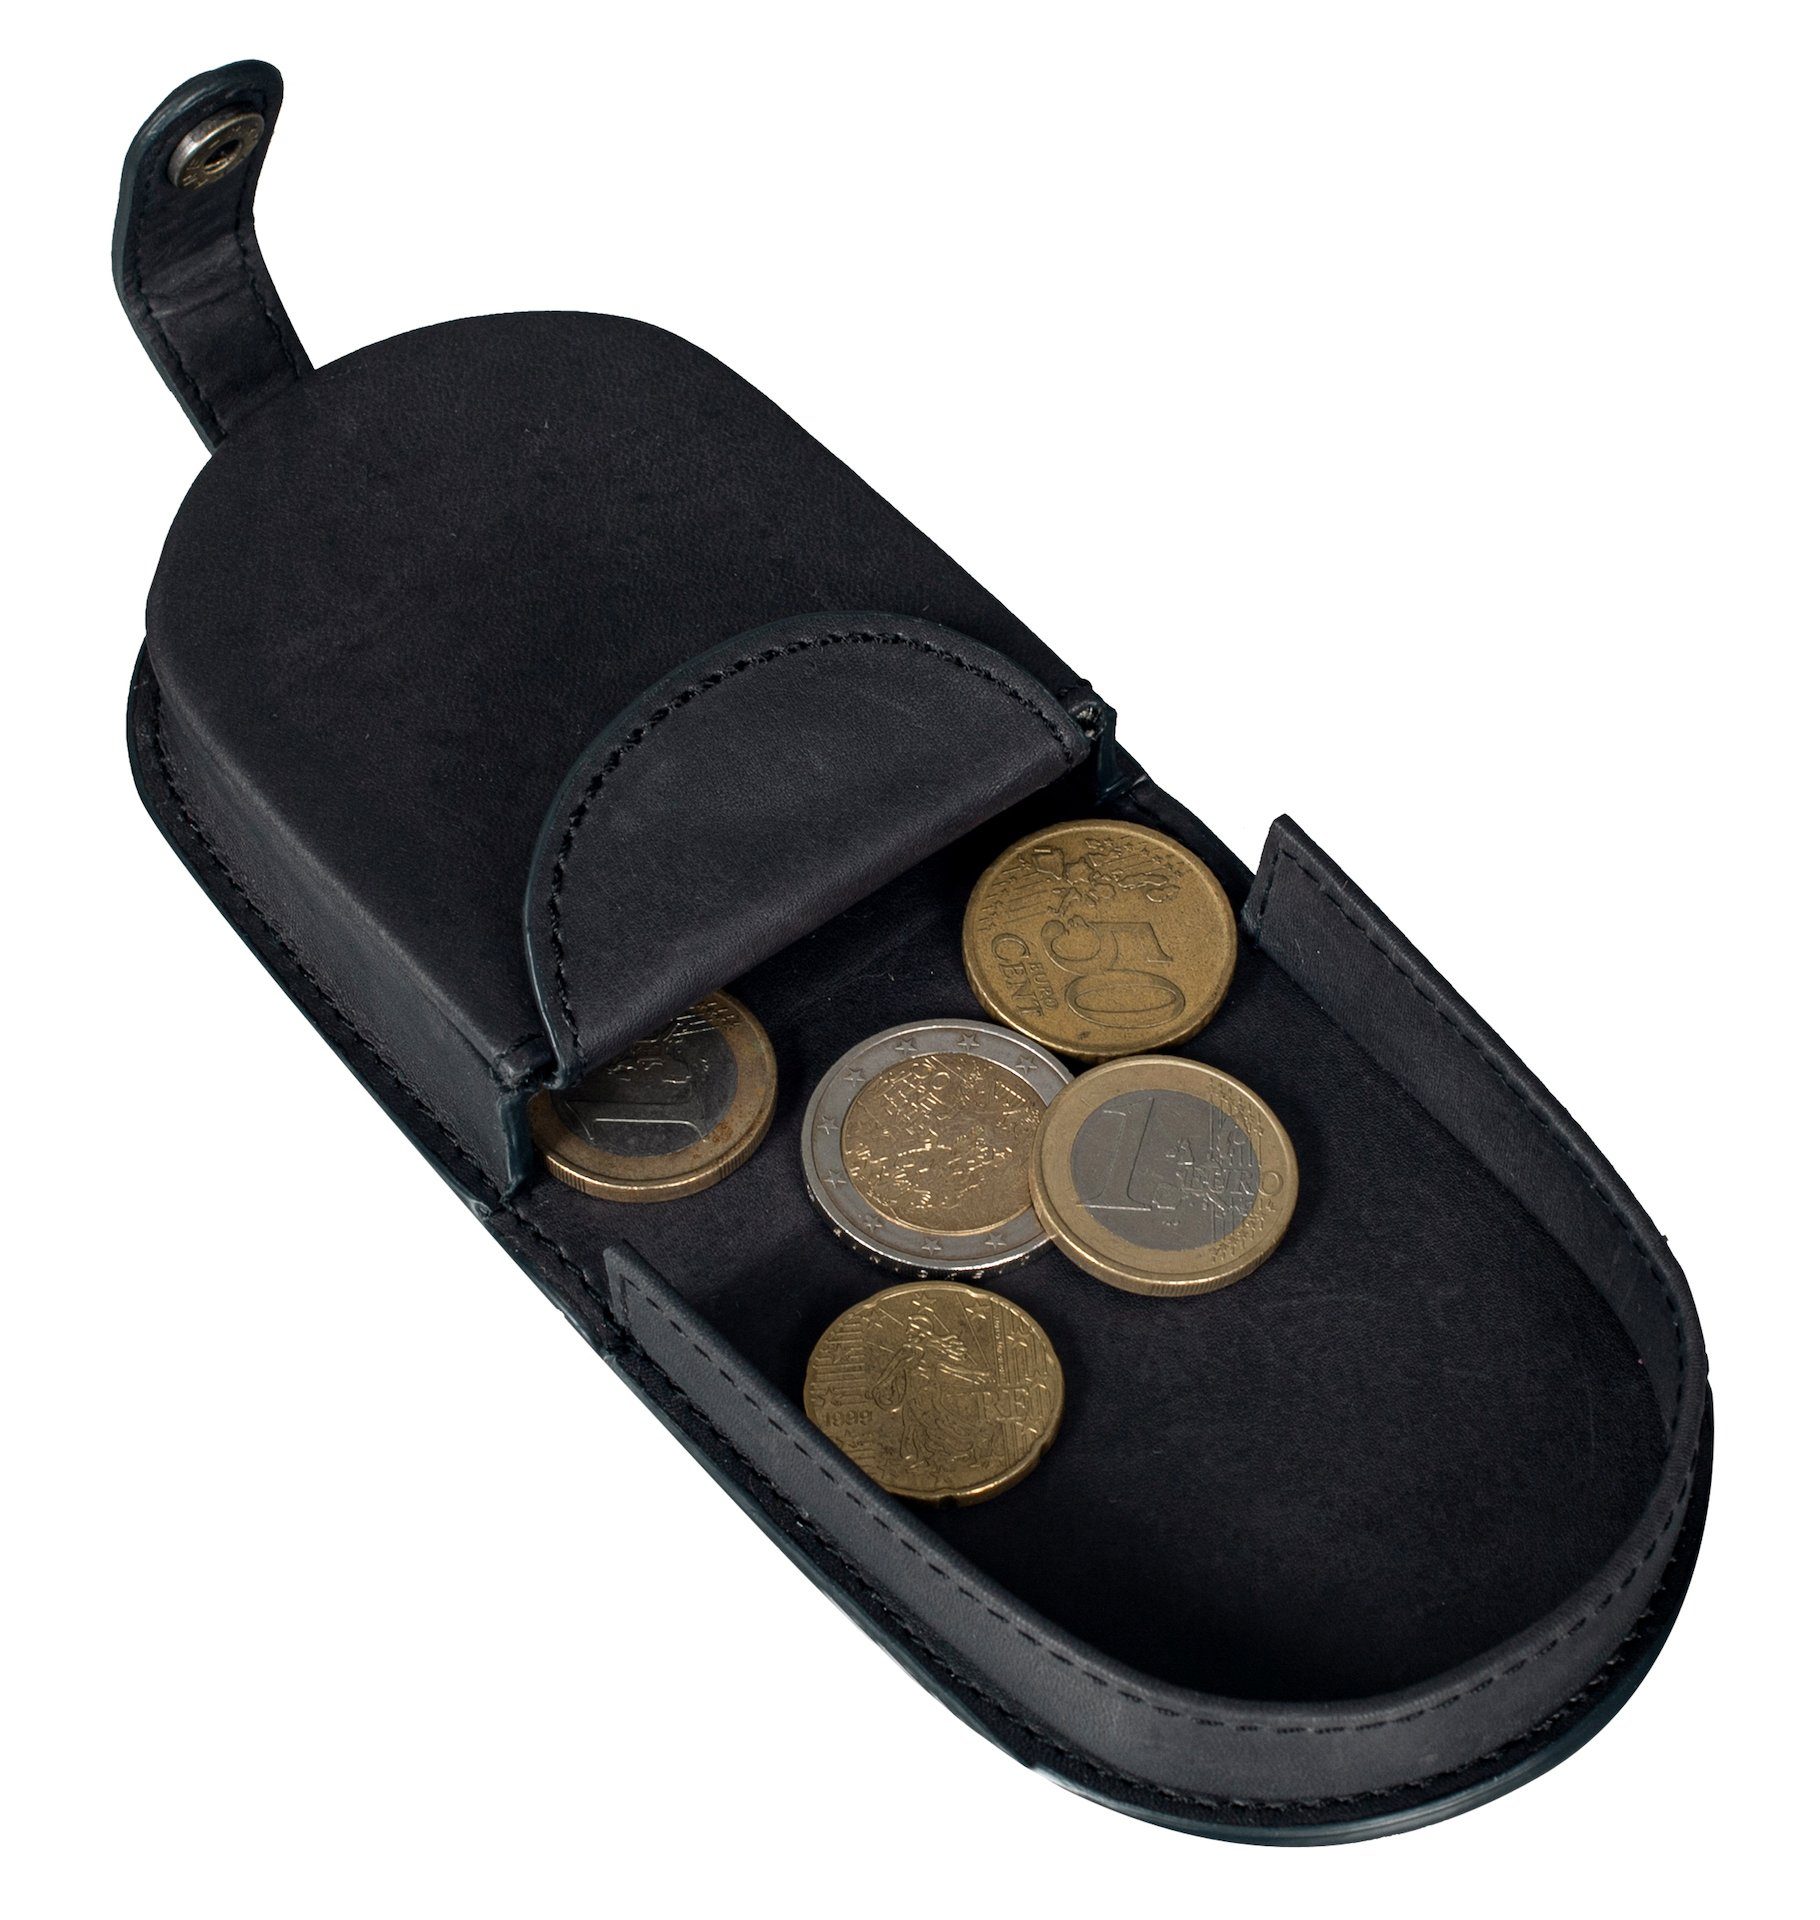 Münzfach mit Kleingeldbörse Münzen, Leder Mini Kleingeldschütte Münzbörse Geldbörse Echt für Benthill